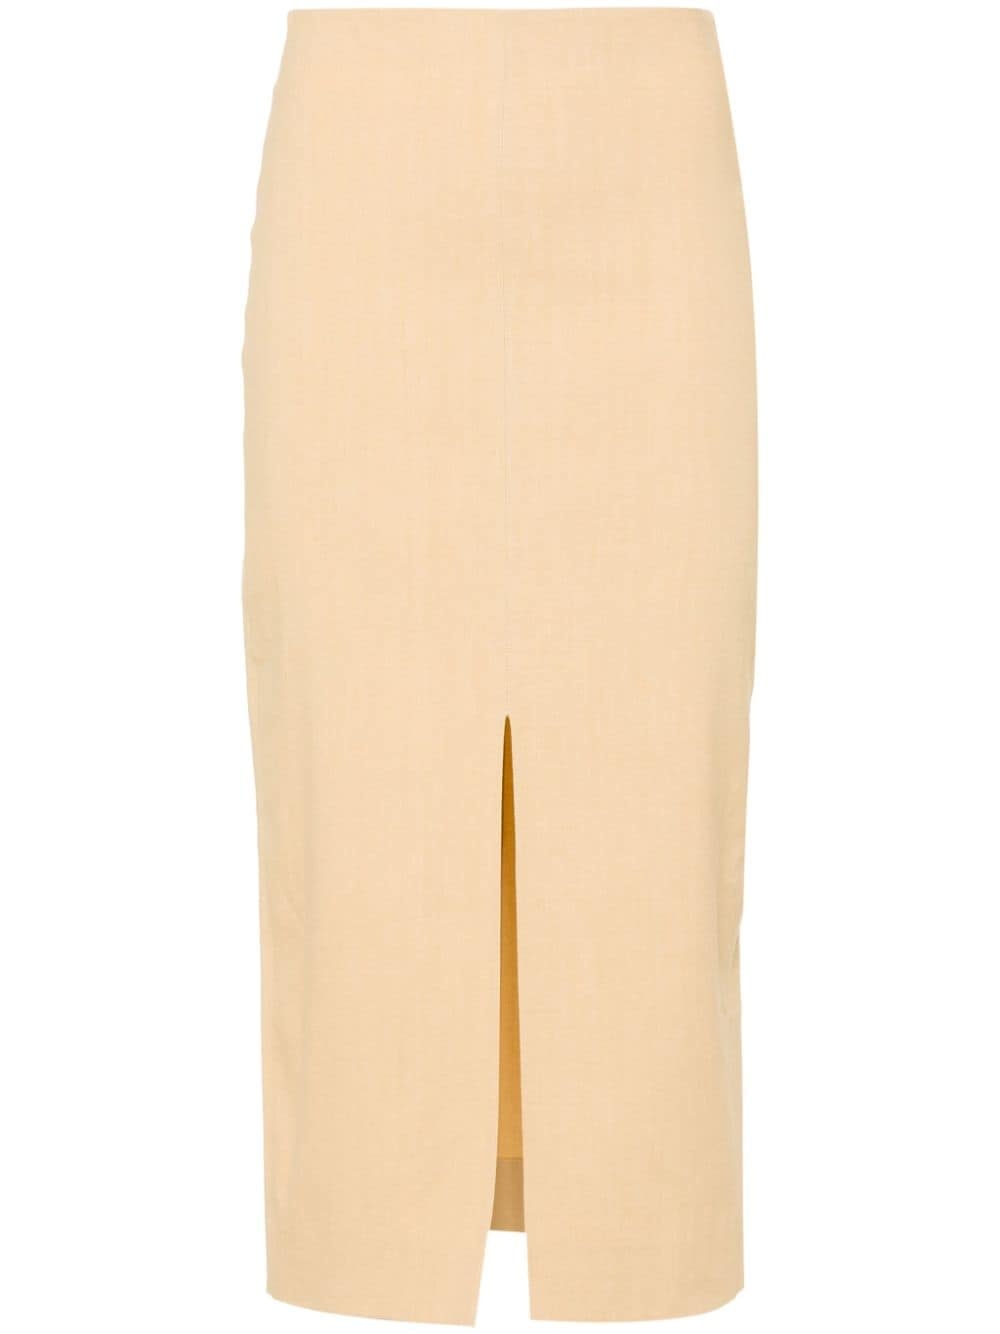 Mills front-slit skirt - 1